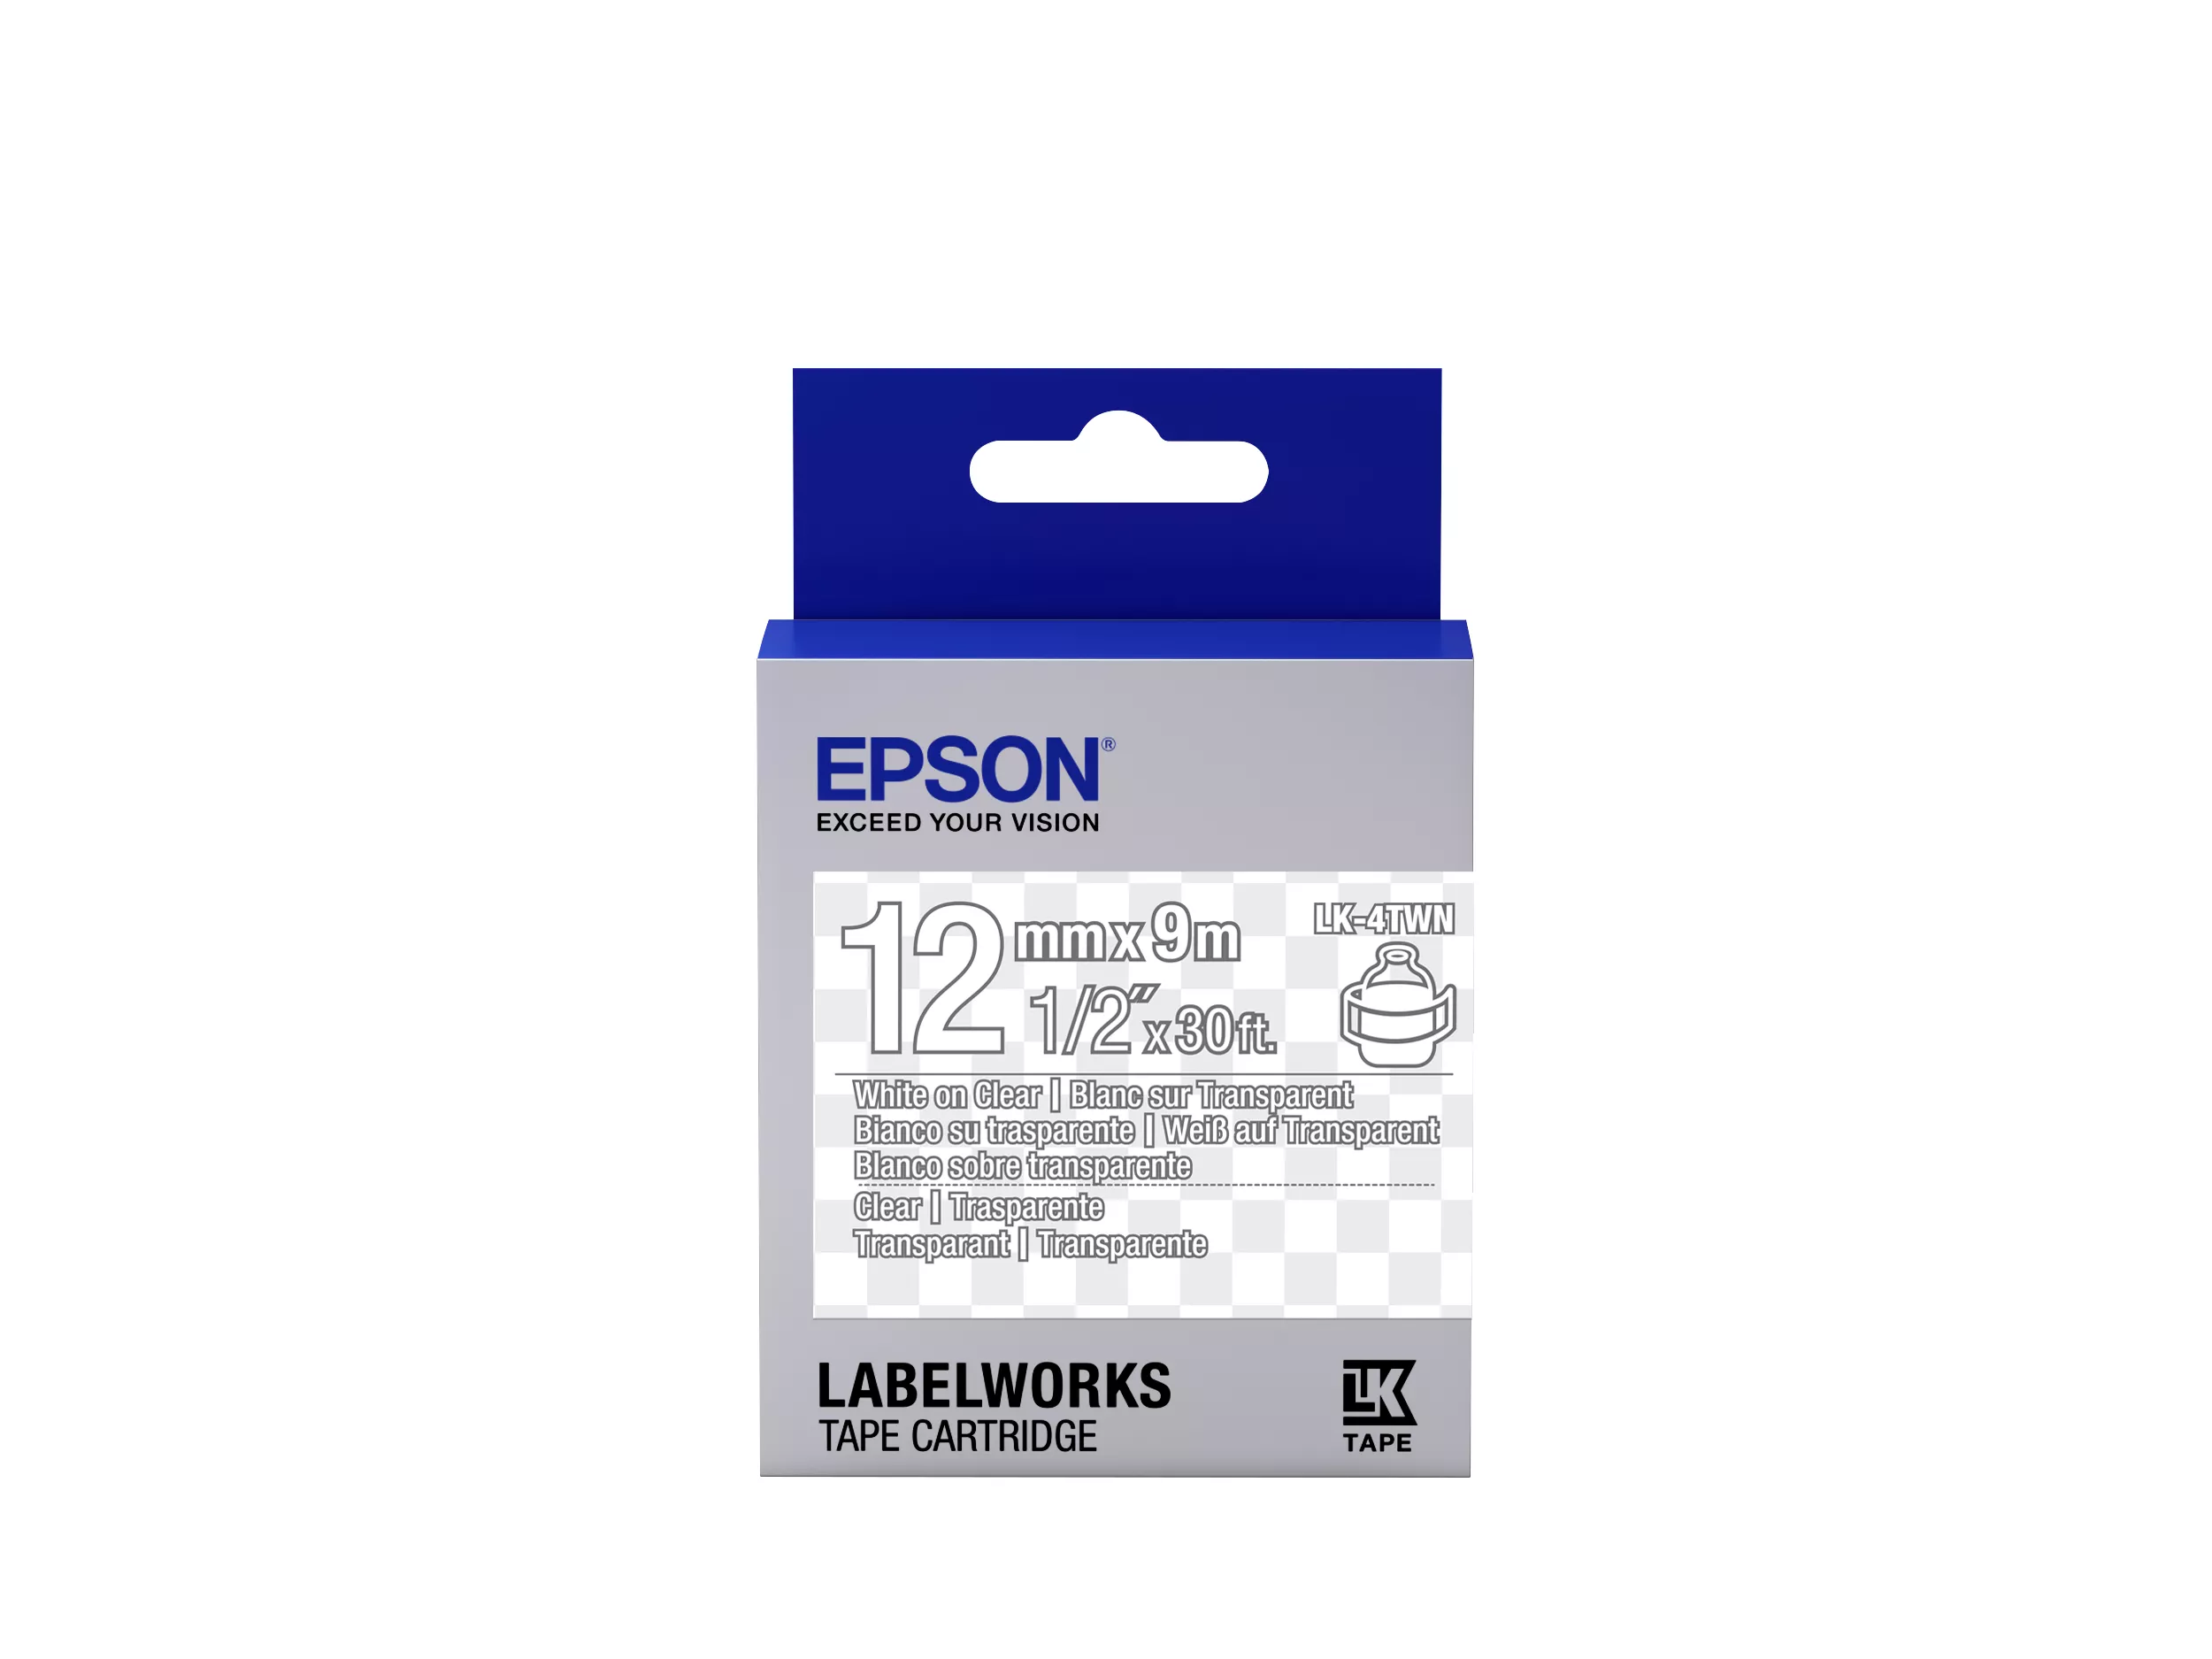 Vente Epson LK-4TWN - Transparent - Blanc sur Transparent au meilleur prix